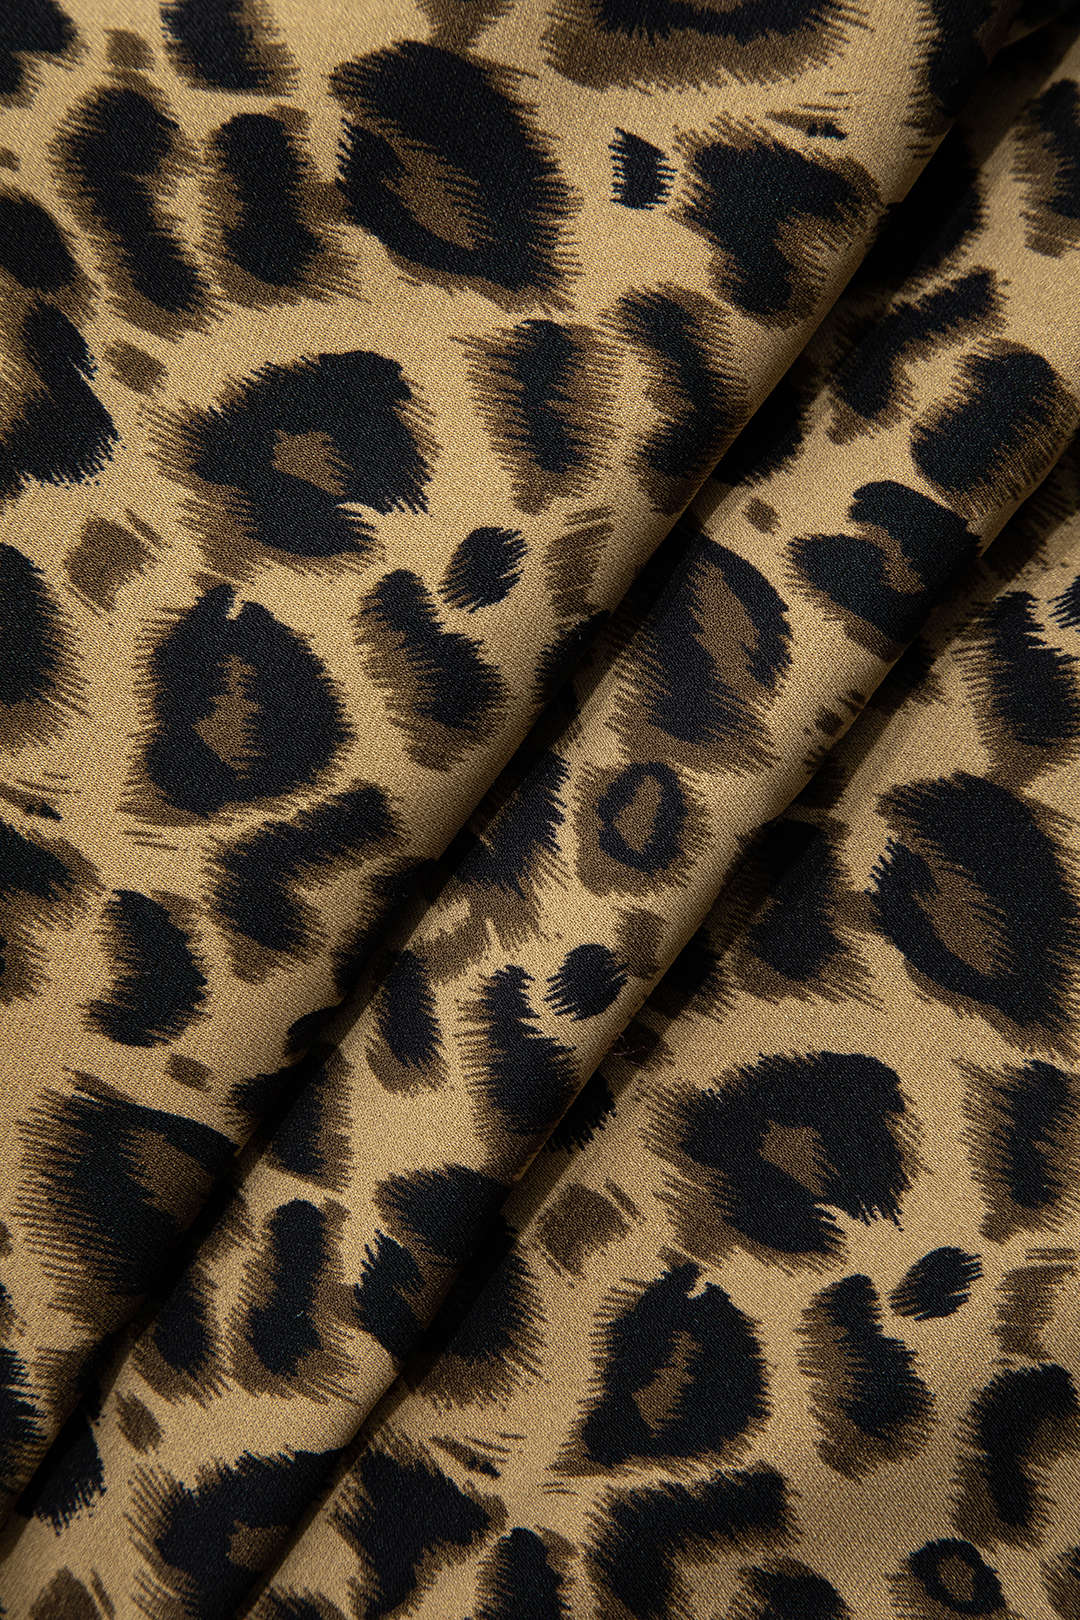 Leopard Print Cowl Neck Mini Dress